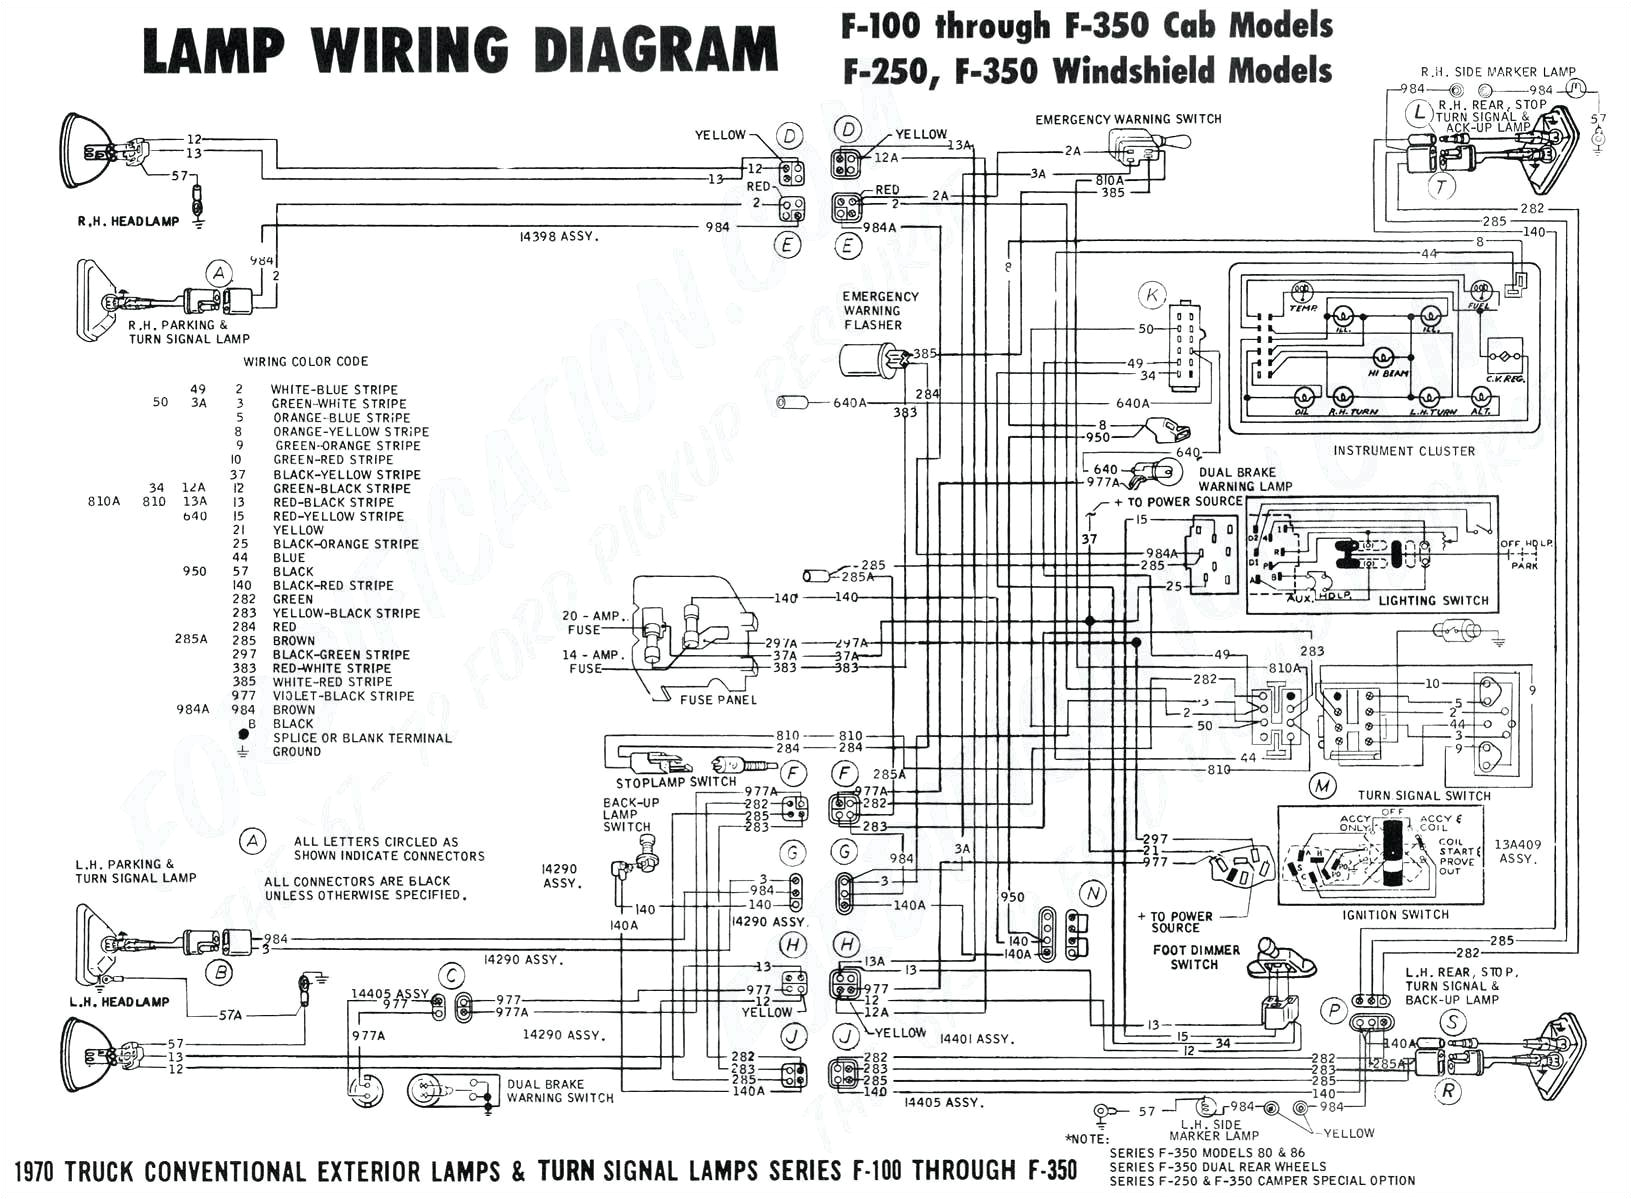 wiring diagram car sn club 48v 5035896 wiring diagram toolbox wiring diagram in car wiring diagram